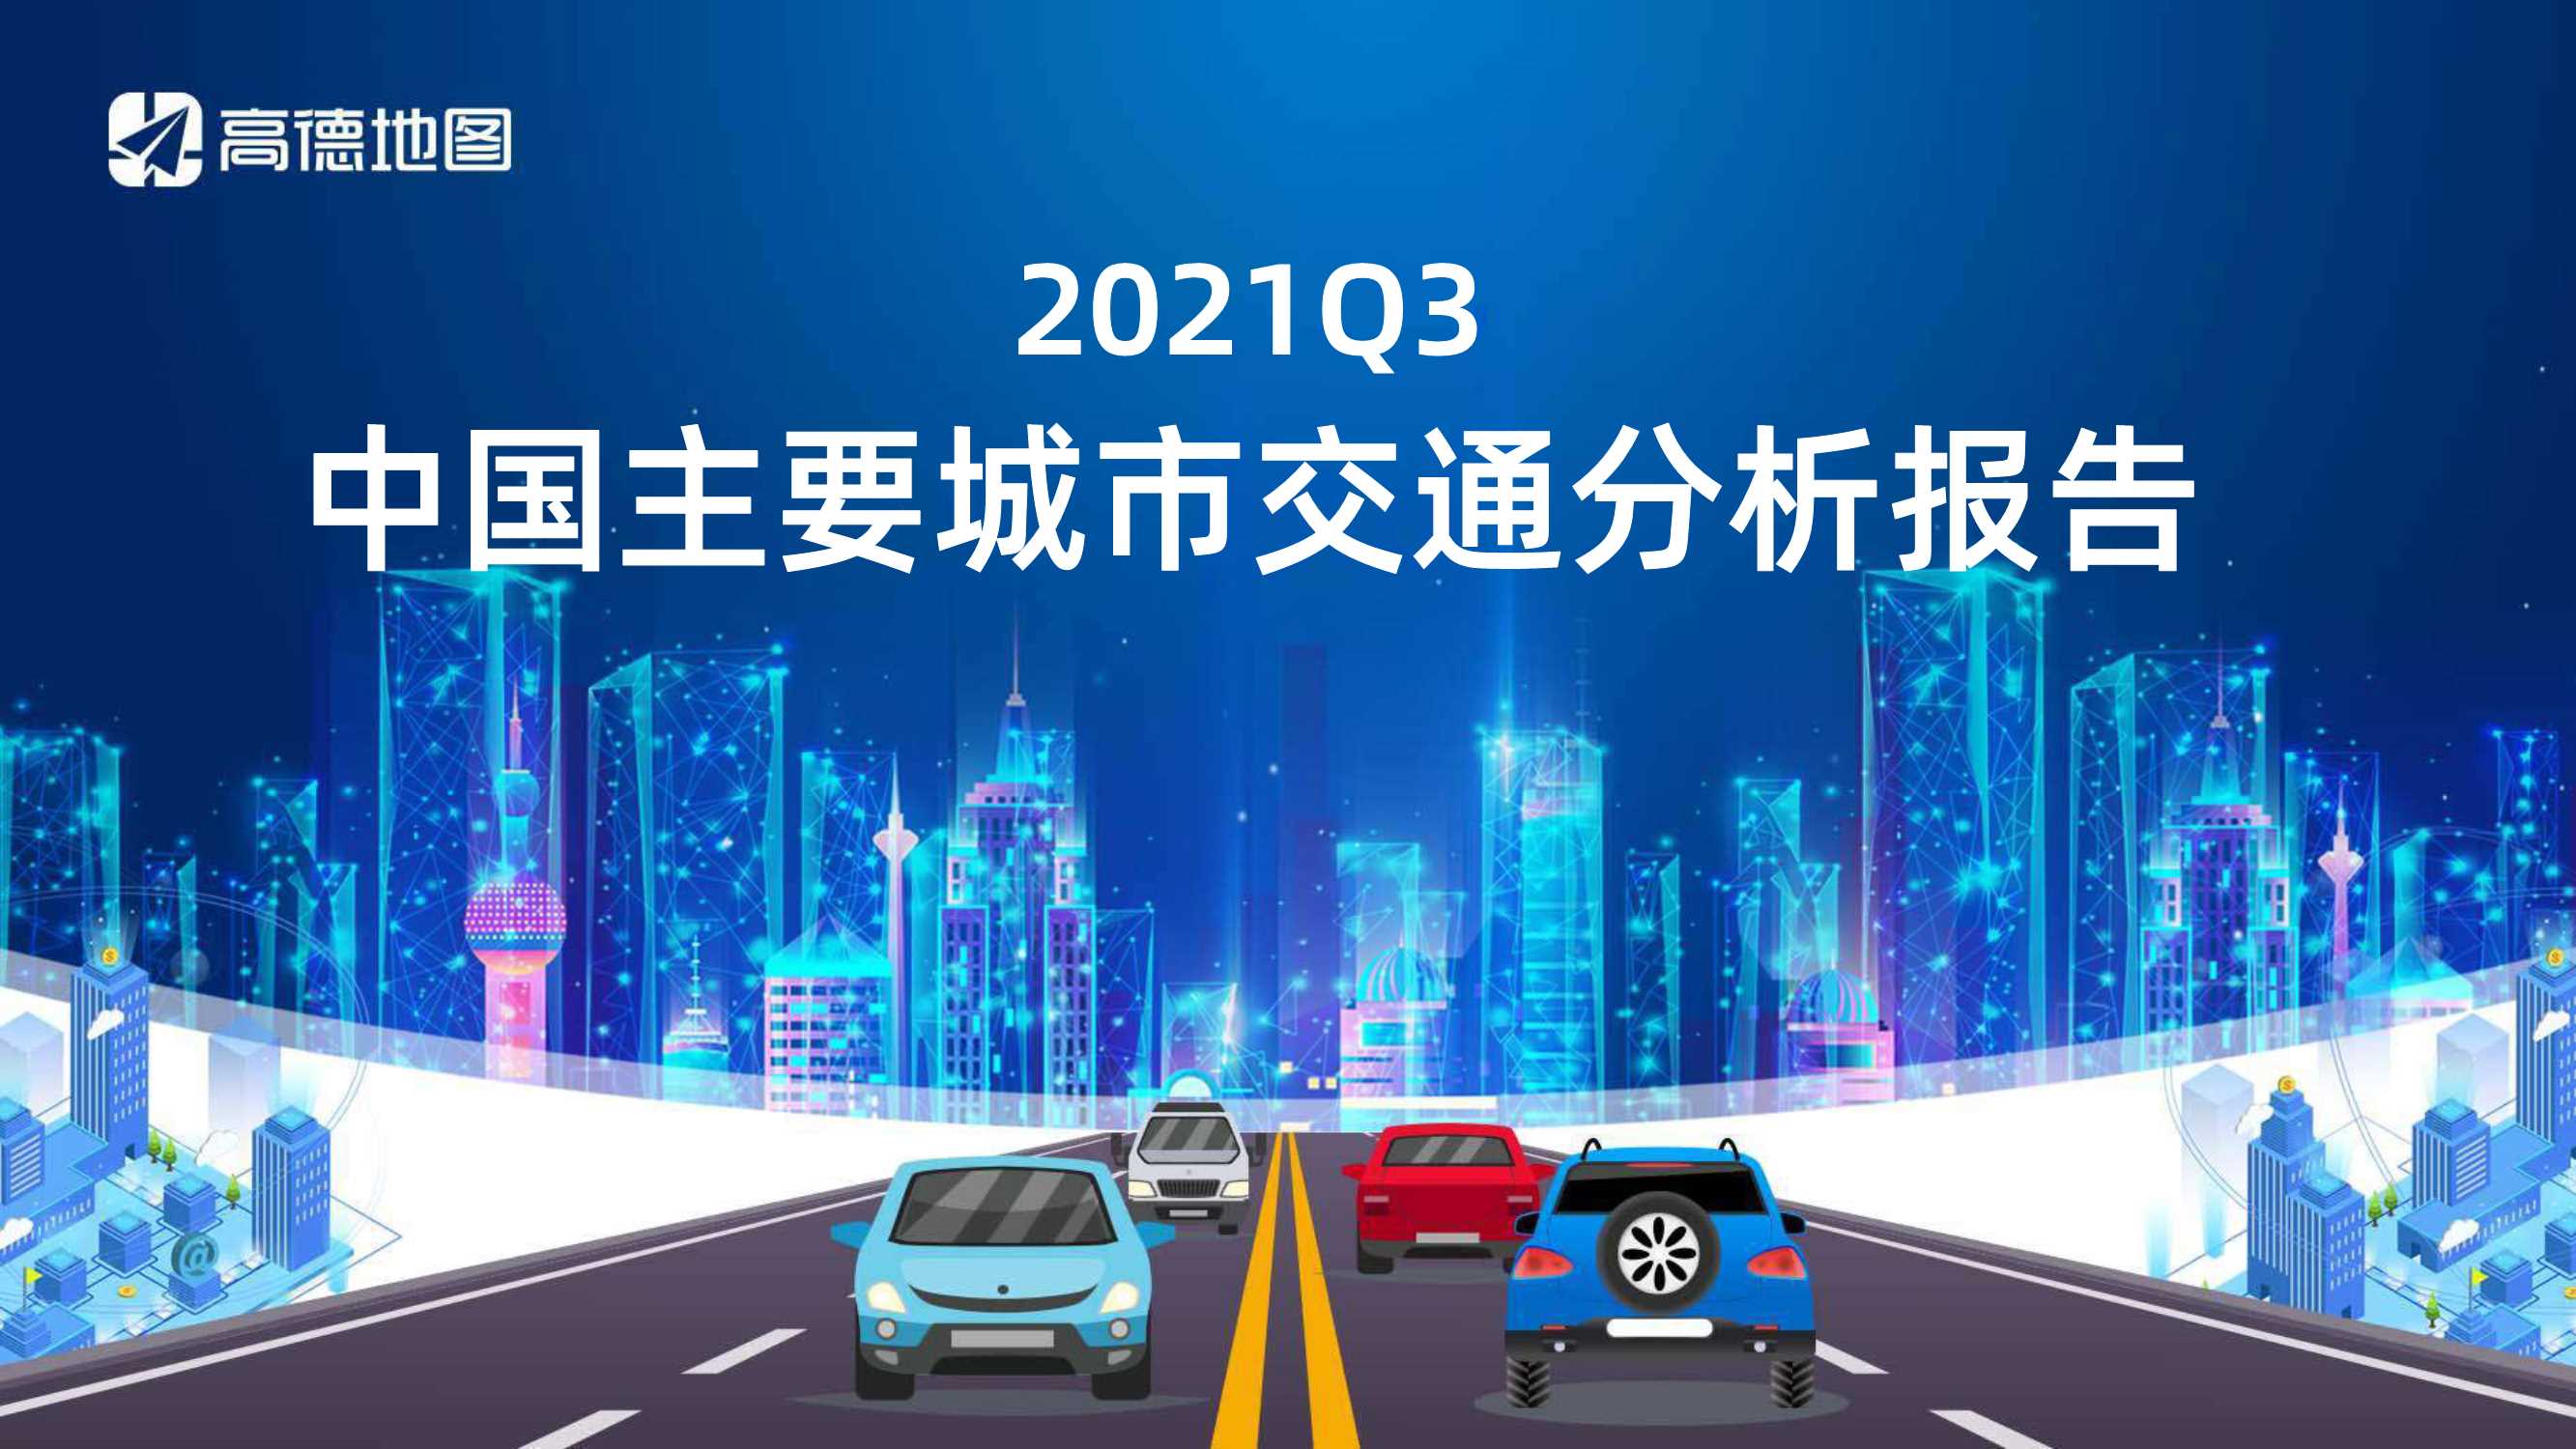 高德地图-2021Q3中国主要城市交通分析报告-2021.11-40页